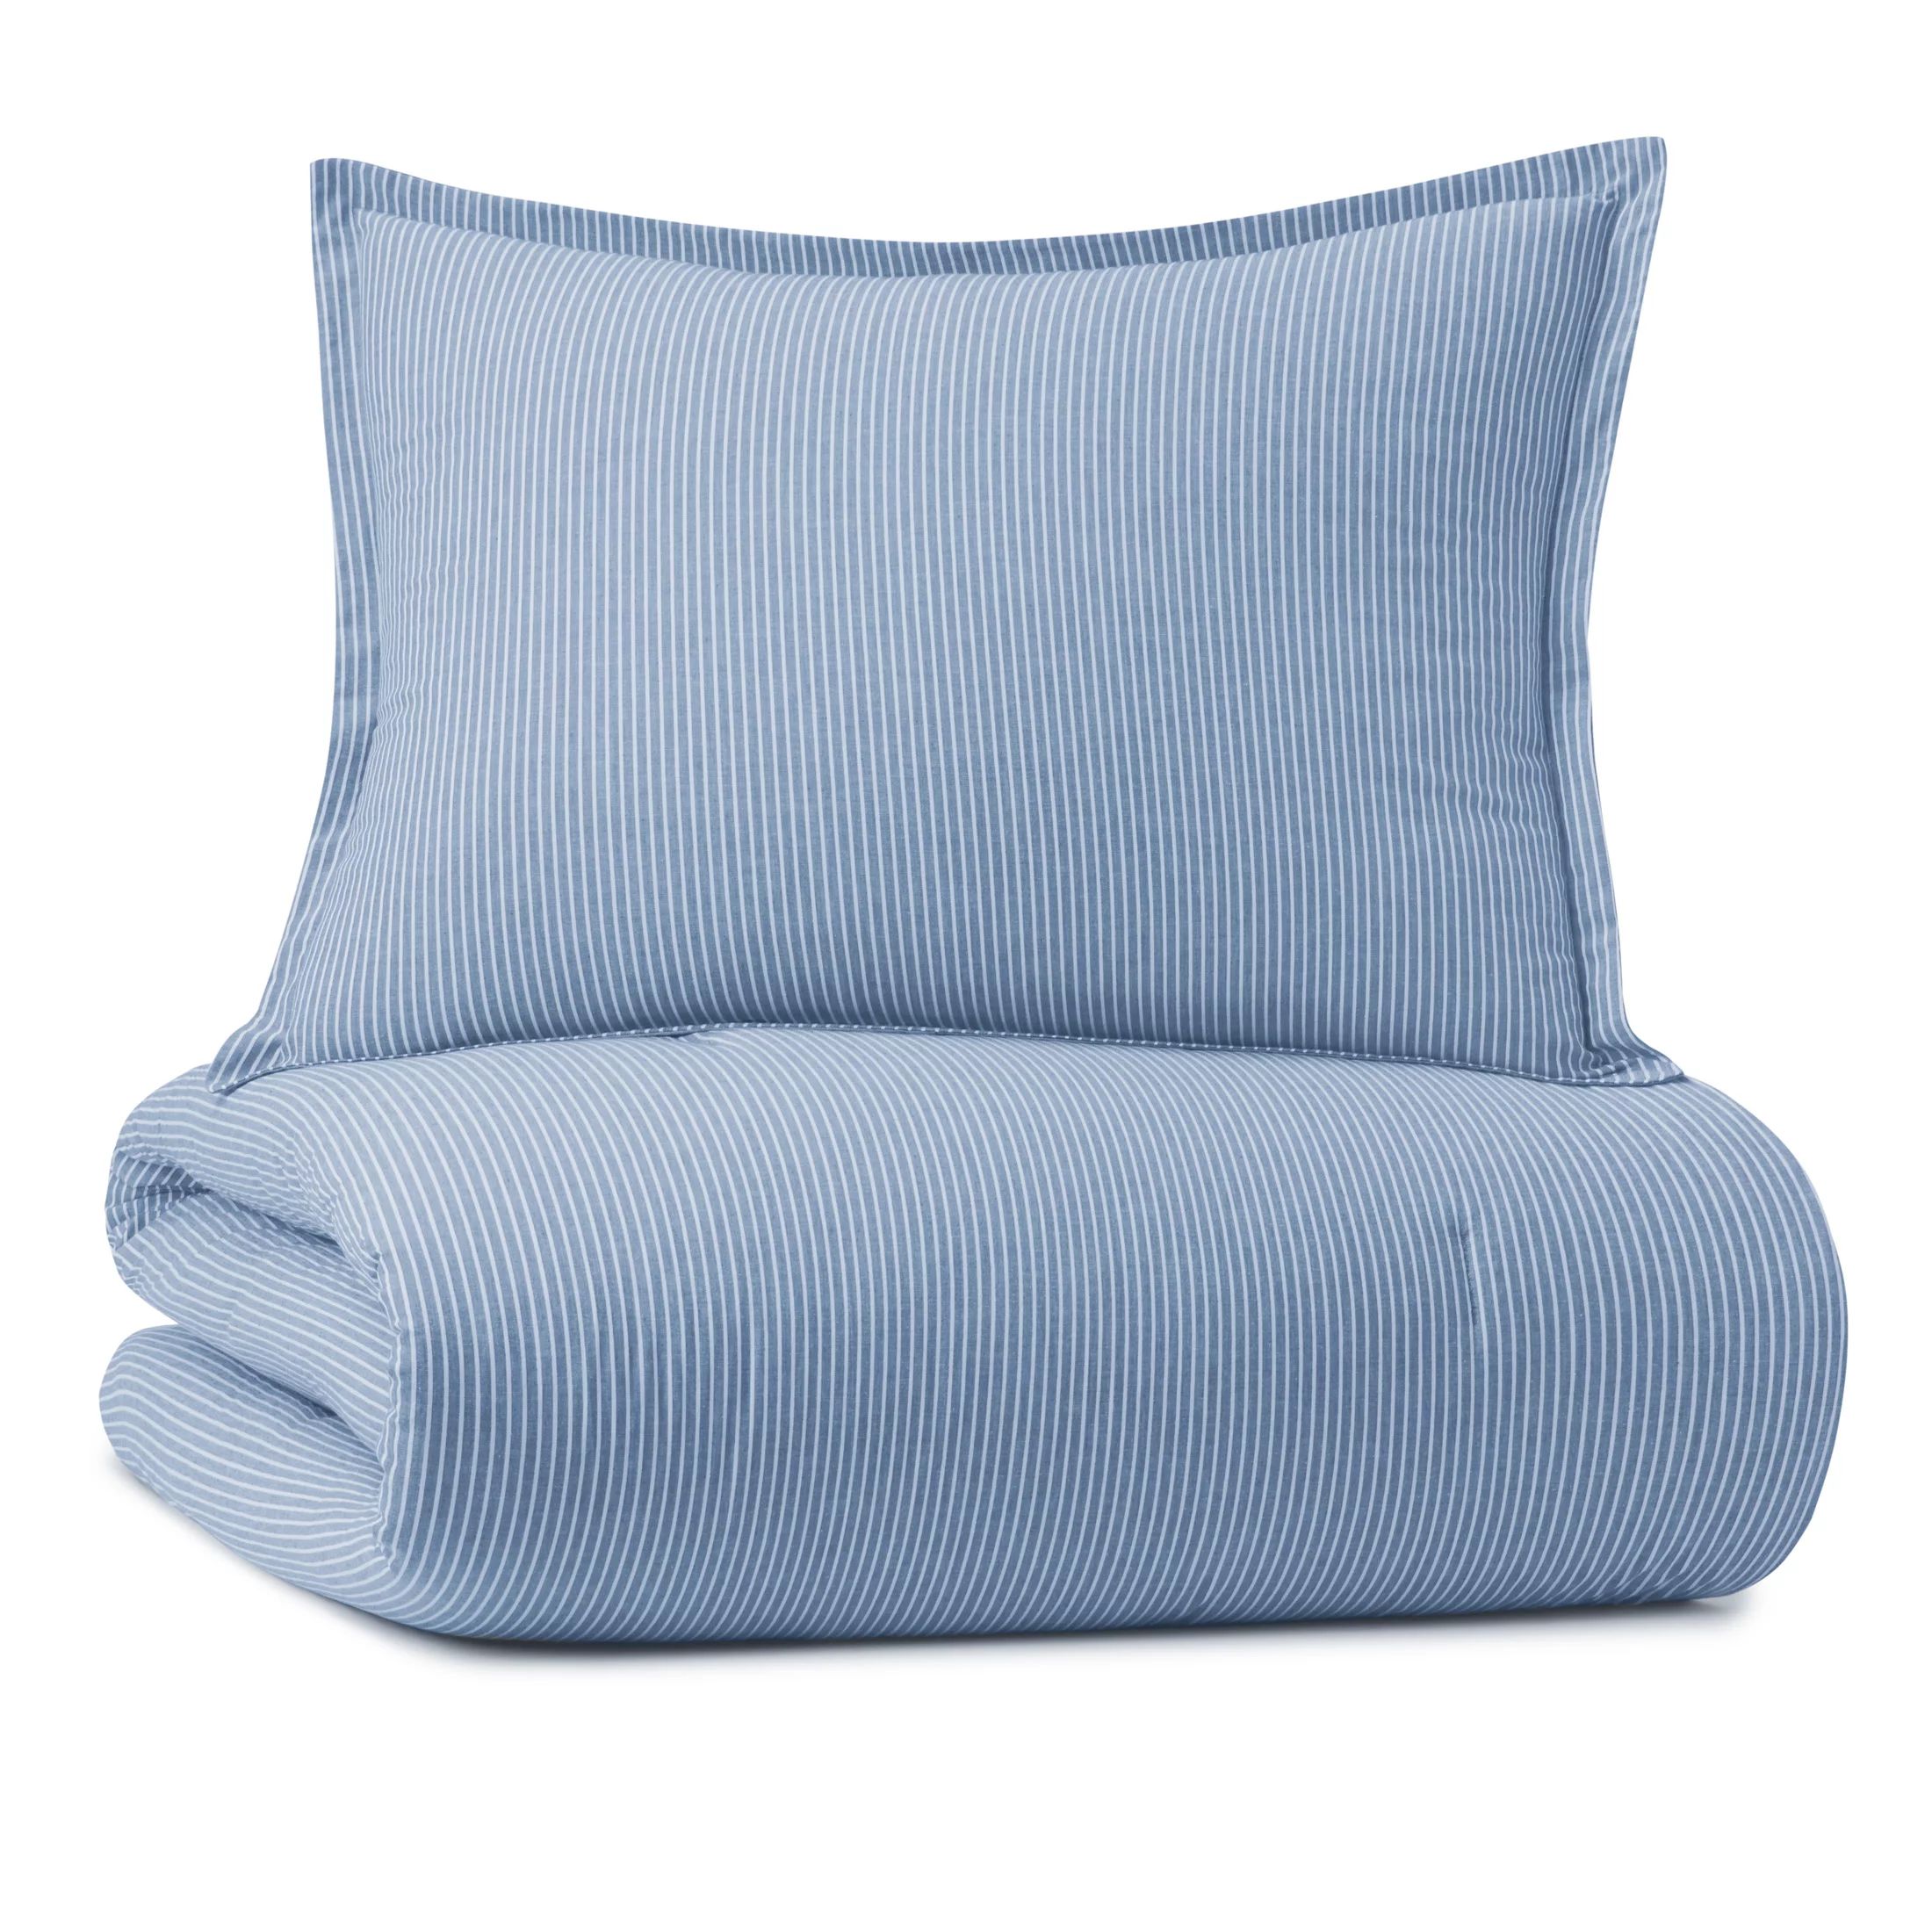 Gap Home Yarn Dyed Washed Chambray Stripe Reversible Organic Cotton Comforter Set, King, Blue, 3-... | Walmart (US)